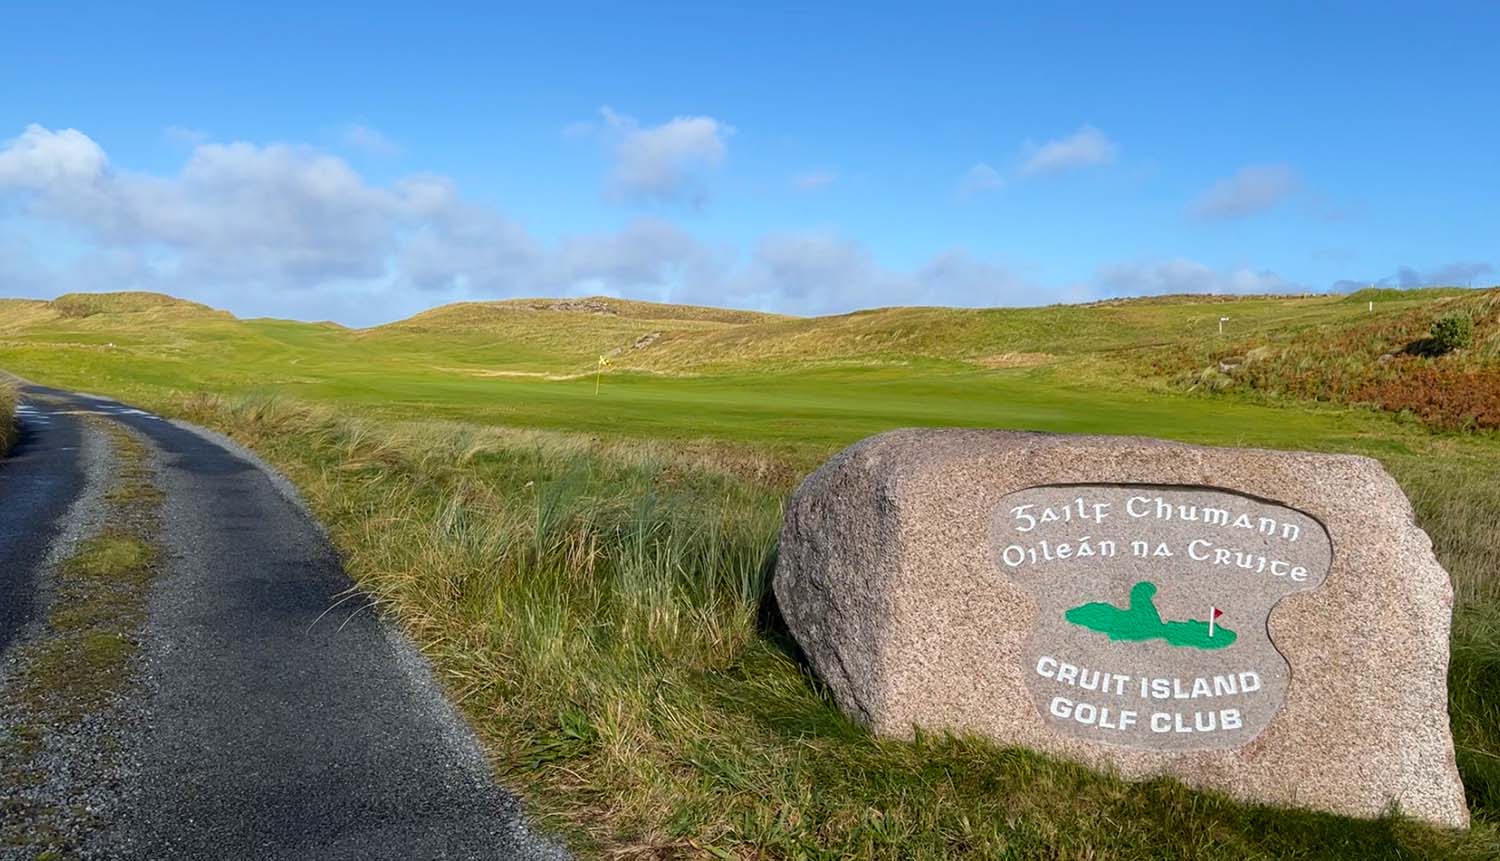 Cruit Island Golf Club sign